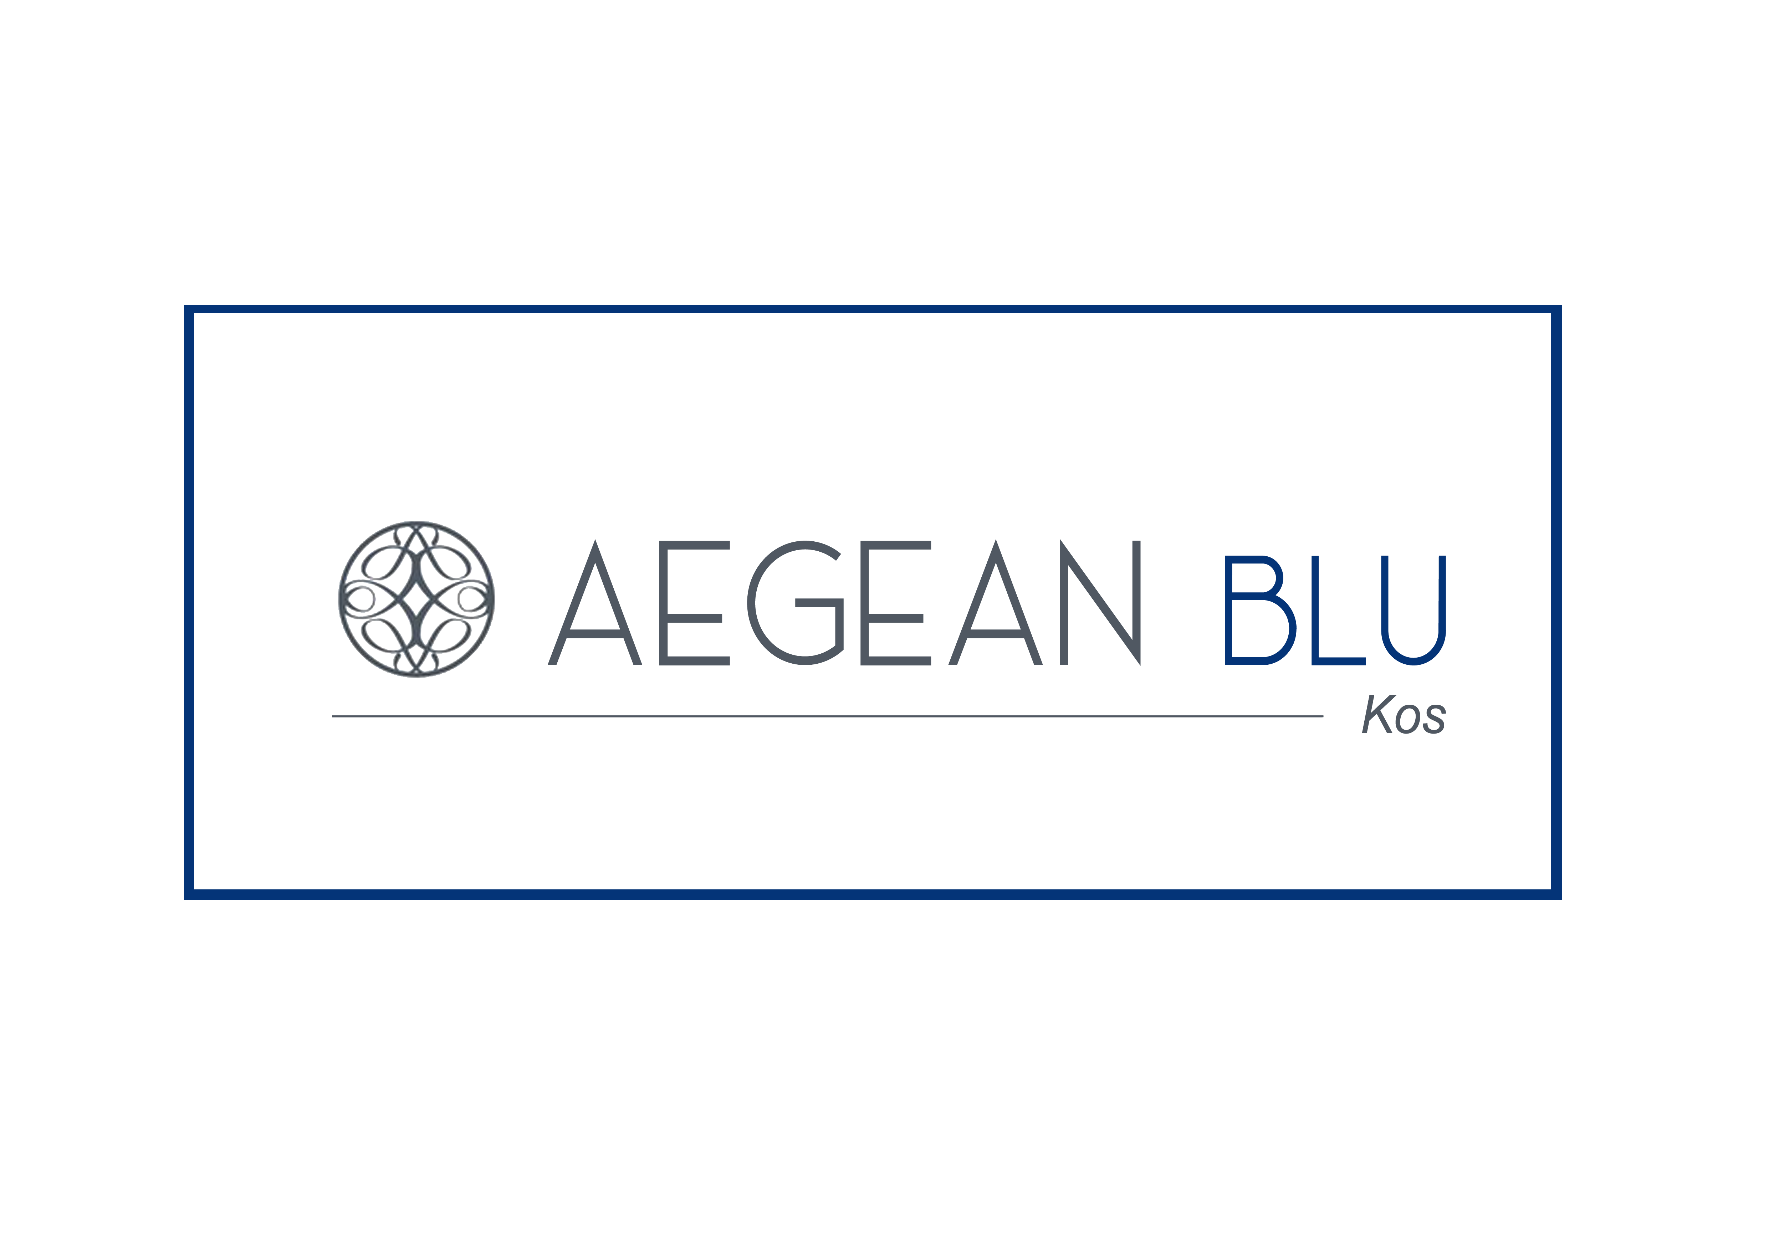 AEGEAN BLU